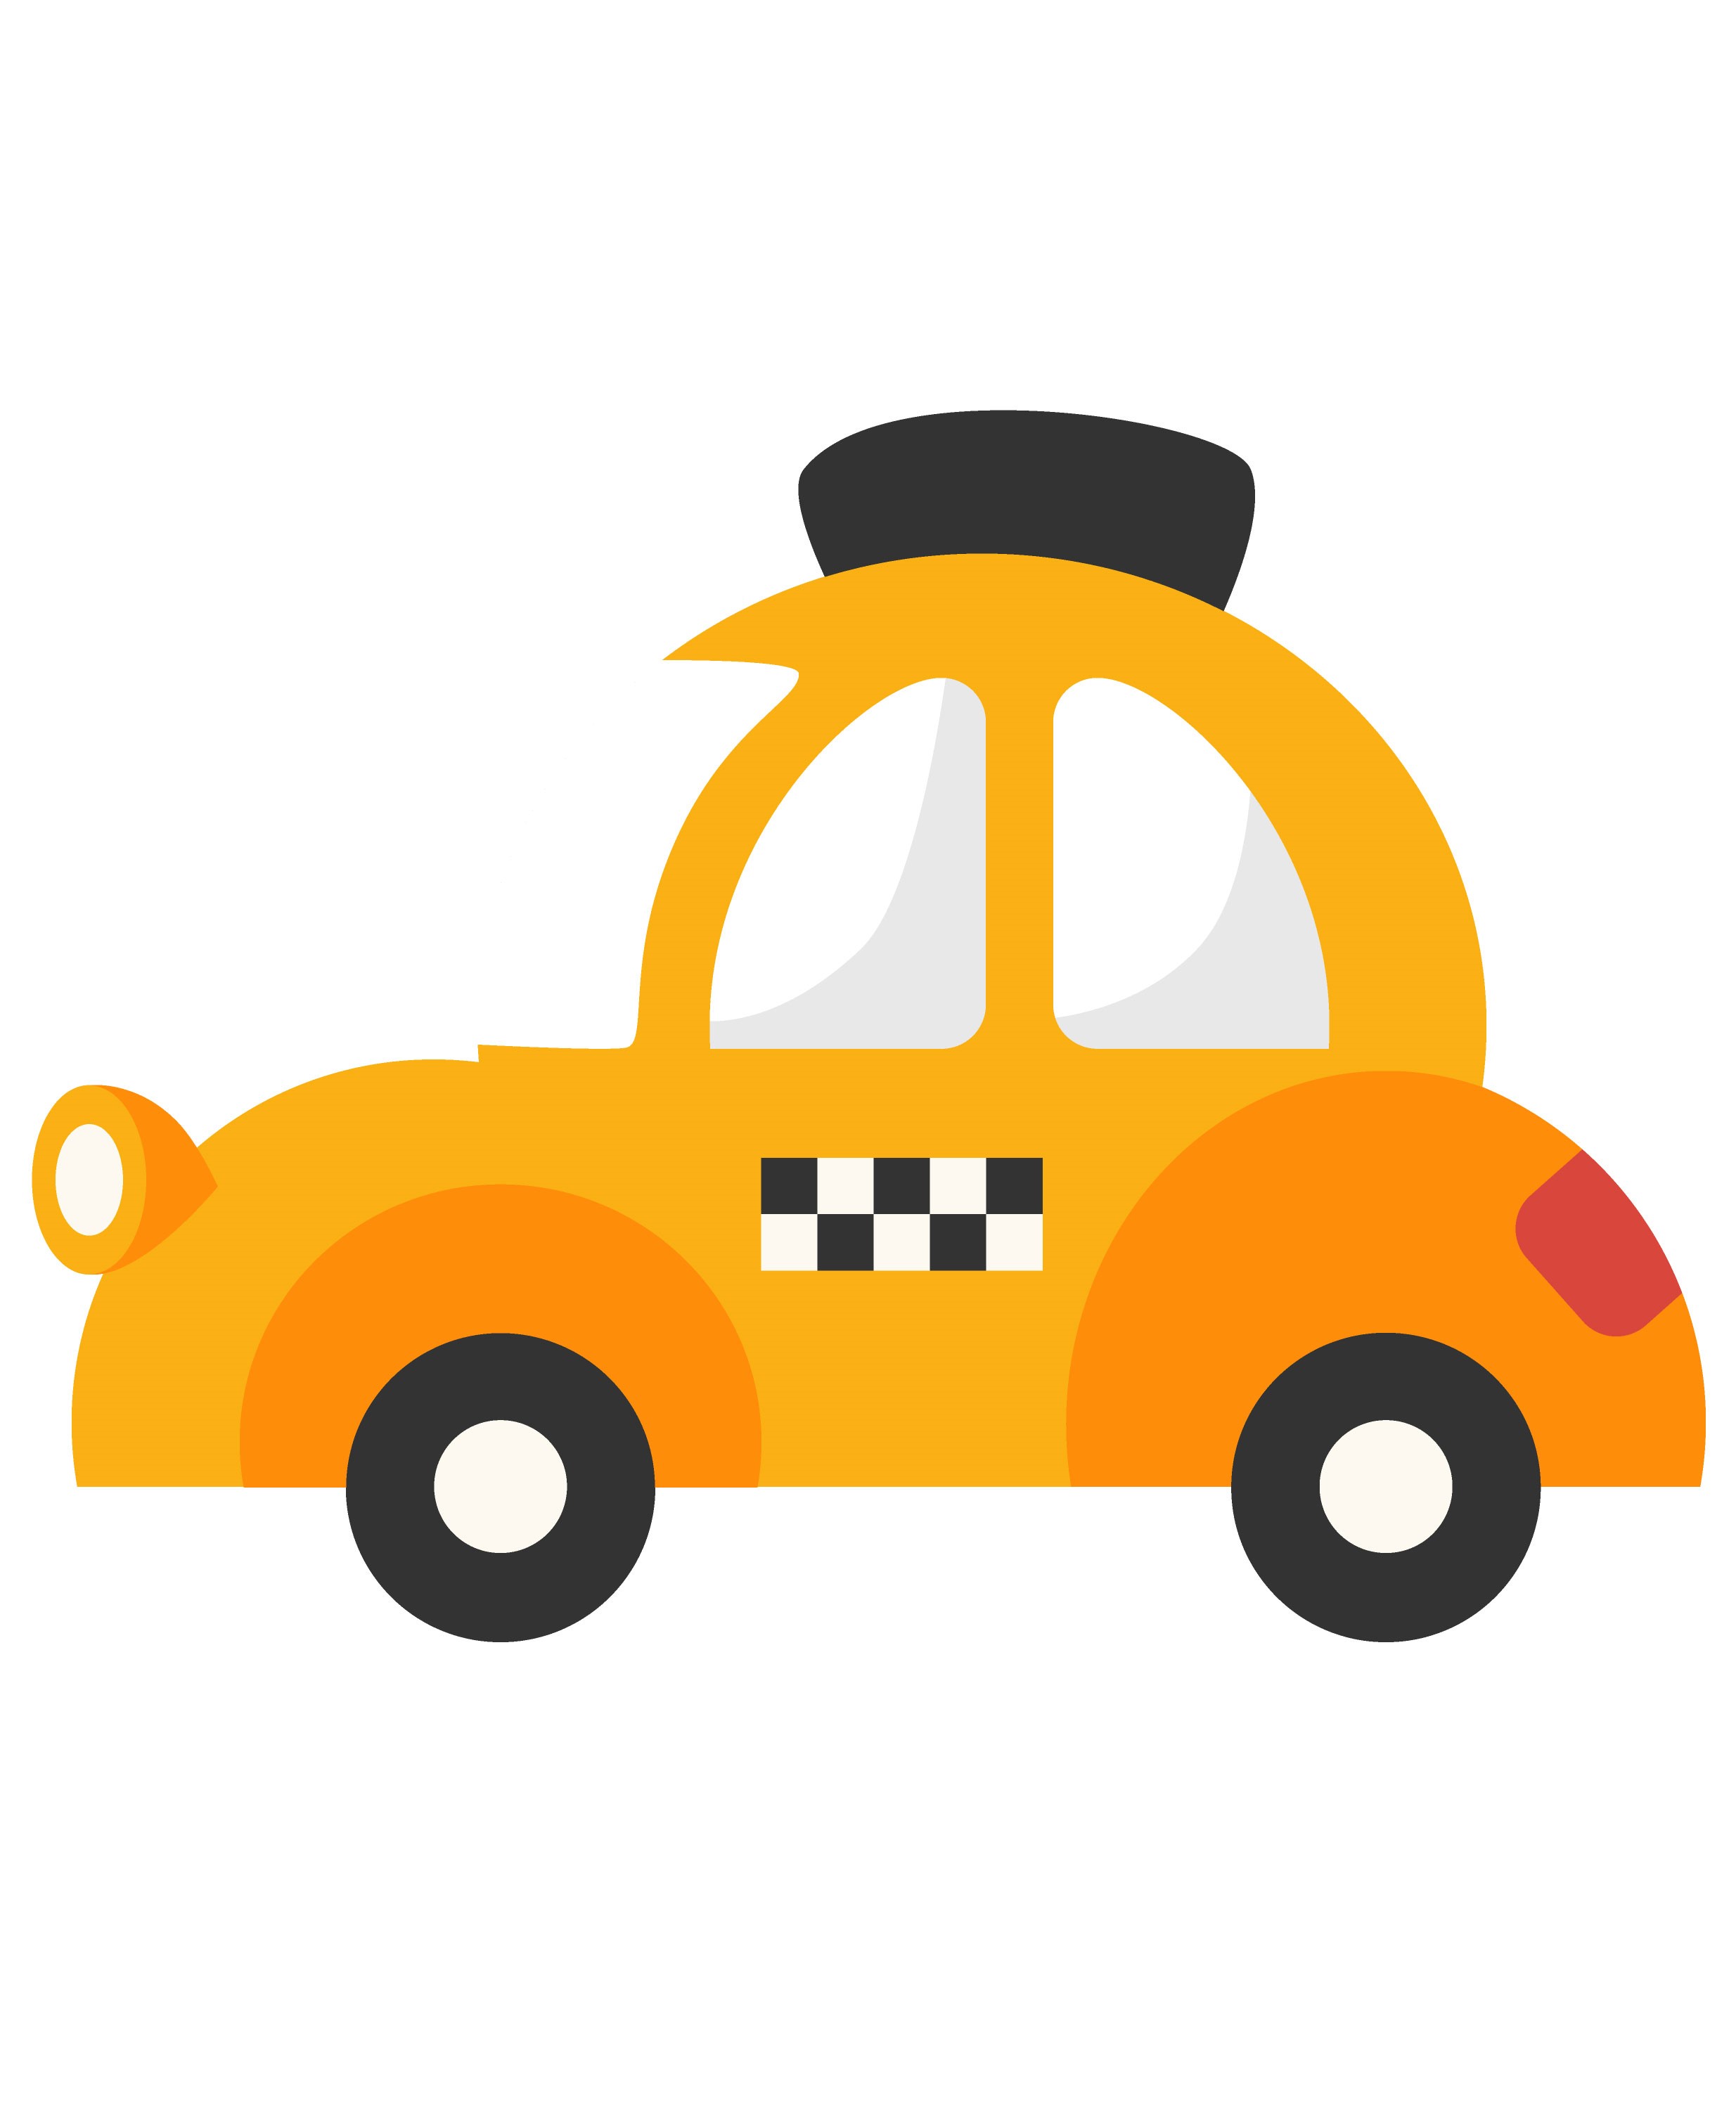 Образец раскрашенной картинки симпатичная машинка такси